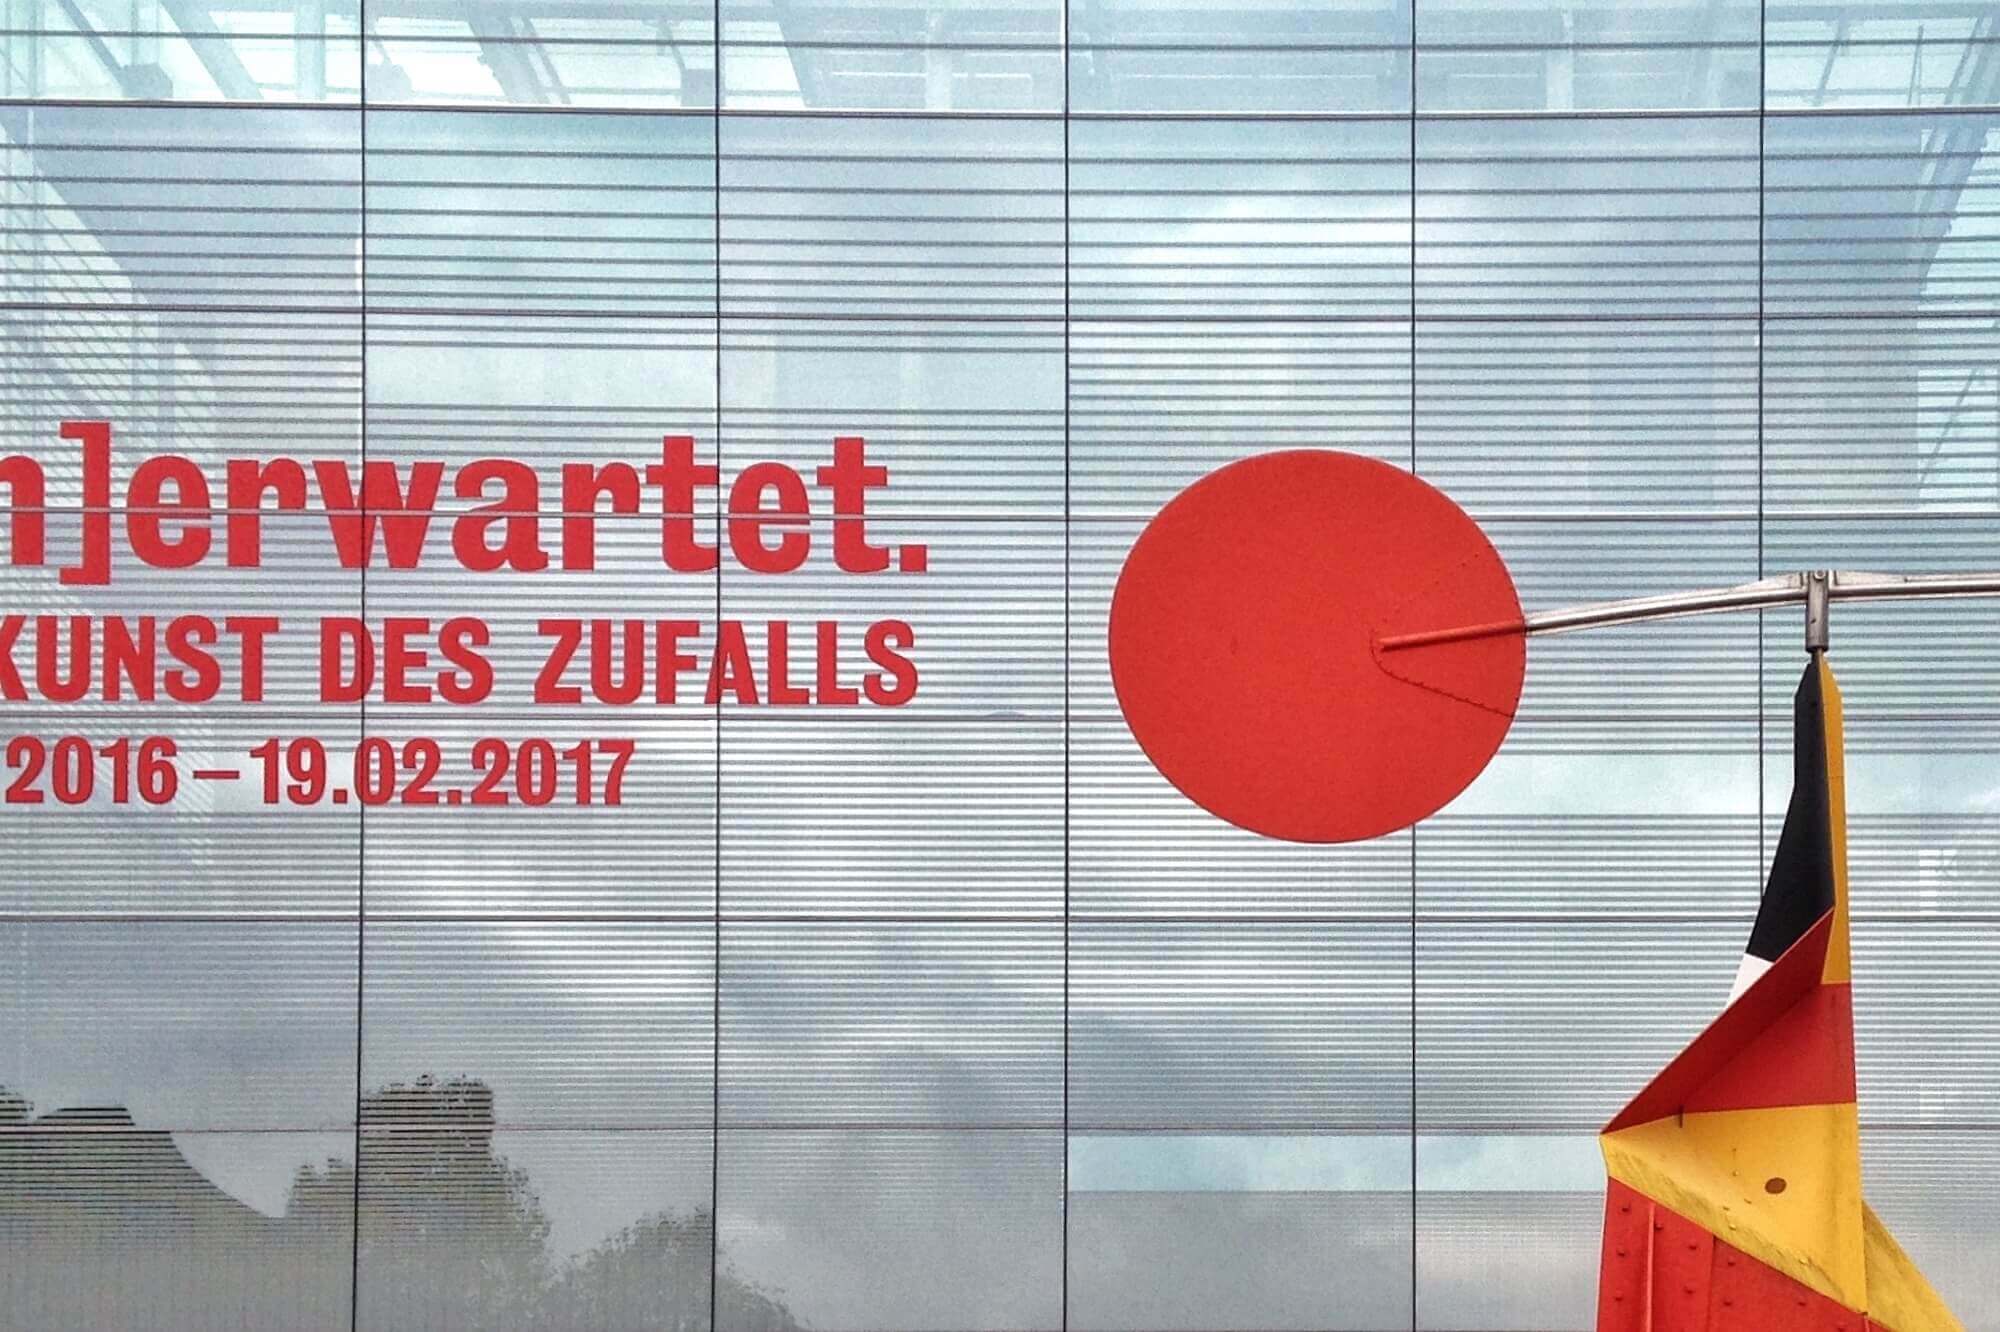 Das Kunstmuseum Stuttgart wirft in seiner Ausstellung „Unerwartet“ einen Blick auf die methodischen Ansätze der Kunst des Zufalls.